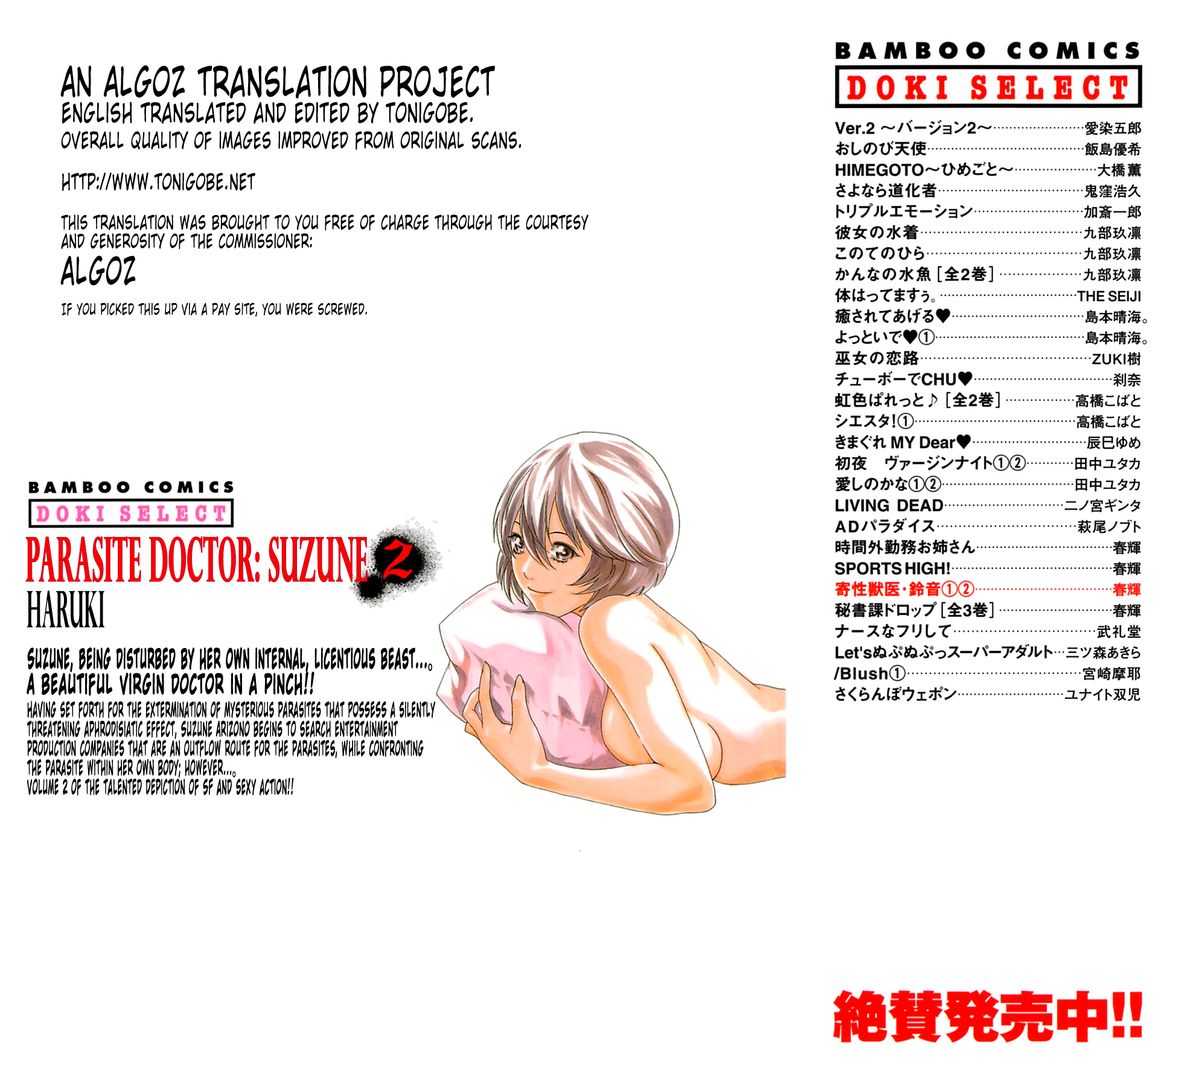 [Haruki] Kisei Juui Suzune (Parasite Doctor Suzune) Vol.02 - CH10-12 page 2 full